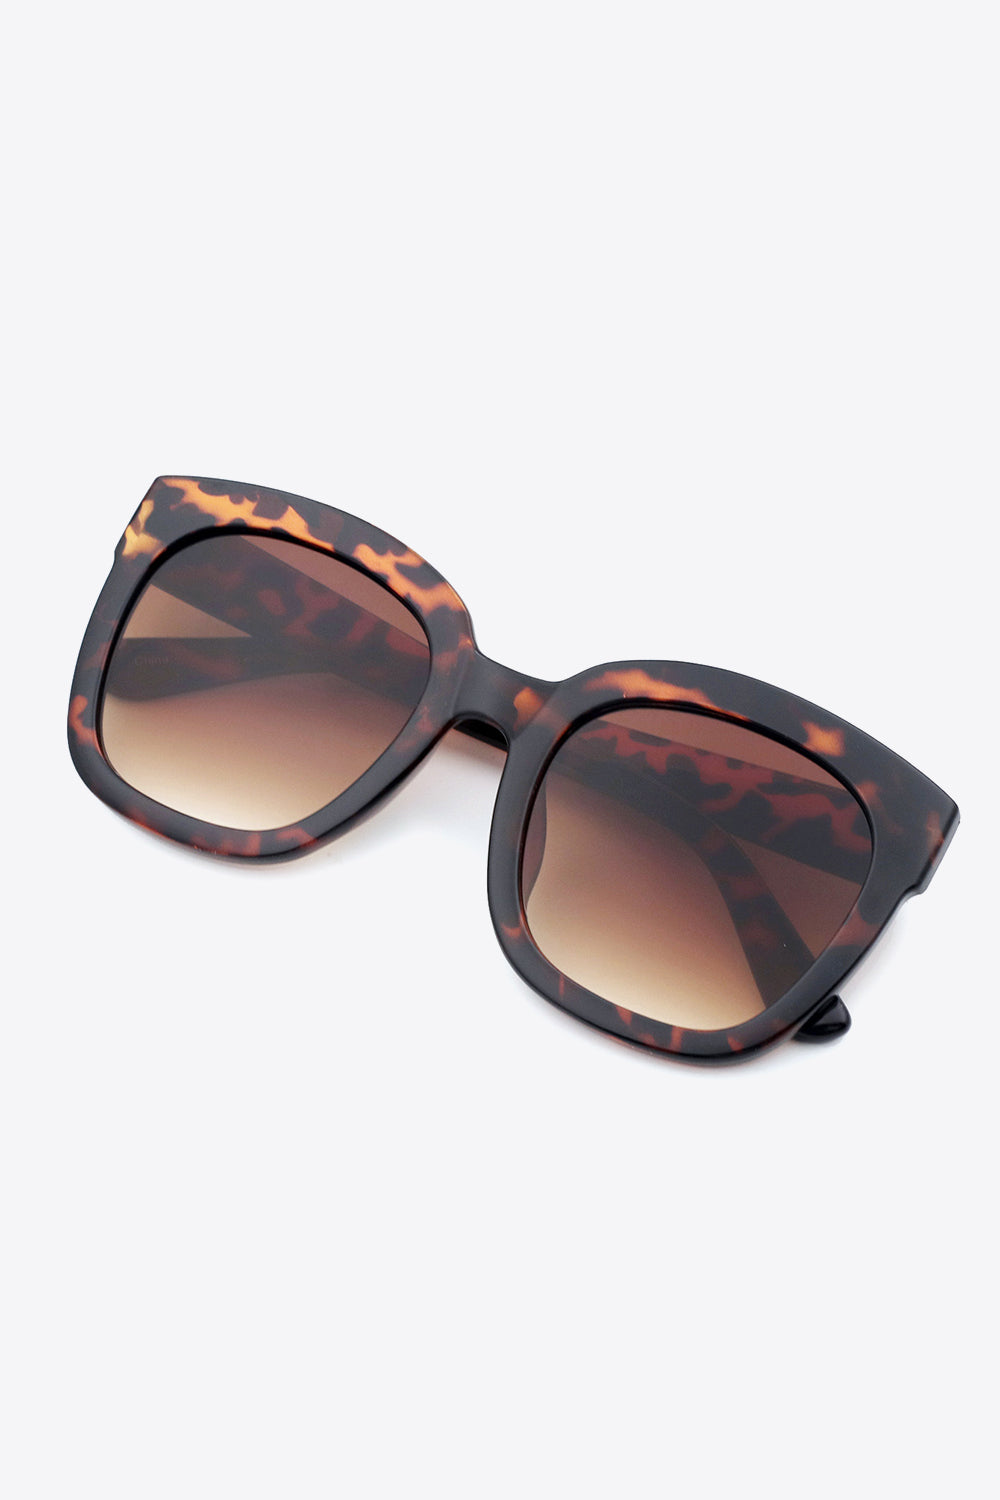 Polycarbonate Frame Square Sunglasses One Size Sunglasses by Vim&Vigor | Vim&Vigor Boutique